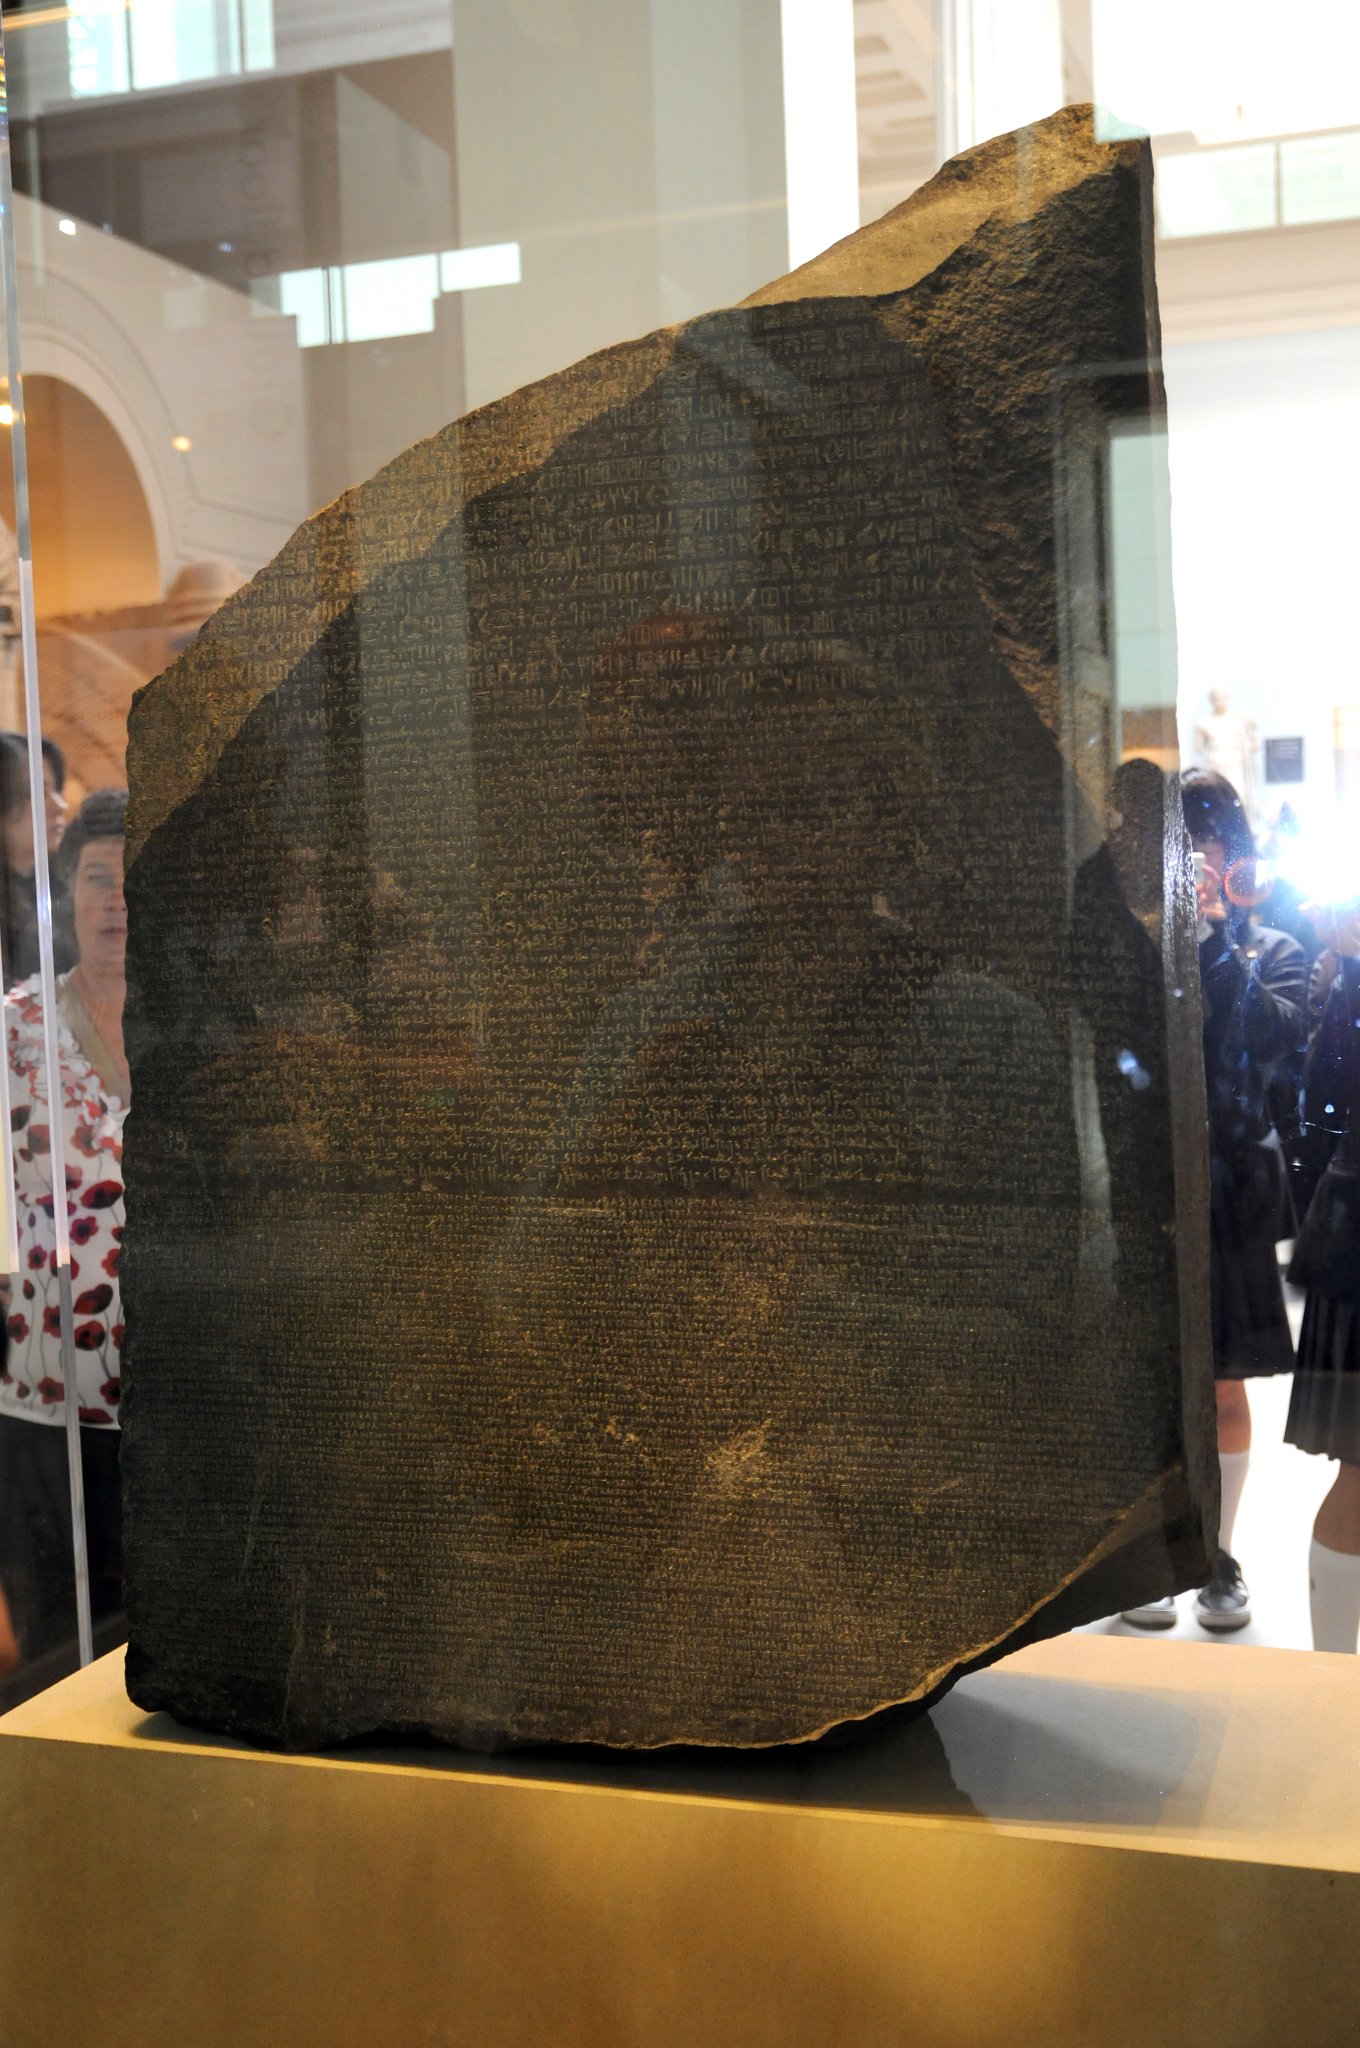 DSC_5692_2.jpg - Rosettská deska (francouzsky: la pierre de Rosette) podle města Rosetta (arabsky: ar-Rašíd) při ústí Nilu, je tradiční označení černé žulové stély o výšce 114 cm a šířce 71 cm, na níž je ve 166 znacích zaznamenán text ve třech shodných verzích: dvou egyptských (v hieroglyfickém a démotickém písmu) a jednom řeckém překladu. Konfrontace řeckého překladu s do té doby nečitelným hieroglyfickým textem umožnila rozluštění hieroglyfů.Desku našel 15. července 1799 francouzský důstojník dělostřelectva Pierre-François-Xavier Bouchard při opevňovacích pracích u pevnosti Fort Jullien v rámci Napoleonova tažení do Egypta. Je do ní vytesán nápis kněze děkujícího roku 196 př. n. l. králi Ptolemaiovi V. Epifanovi ve třech shodných verzích - dvou egyptských (v hieroglyfickém a démotickém písmu) a jednom řeckém překladu. Jde vlastně o „kopii“ dekretu, kterým synoda zahrnula panovníka poctami v devátém roce jeho panování. V té době byla v Egyptě úředním jazykem řečtina.